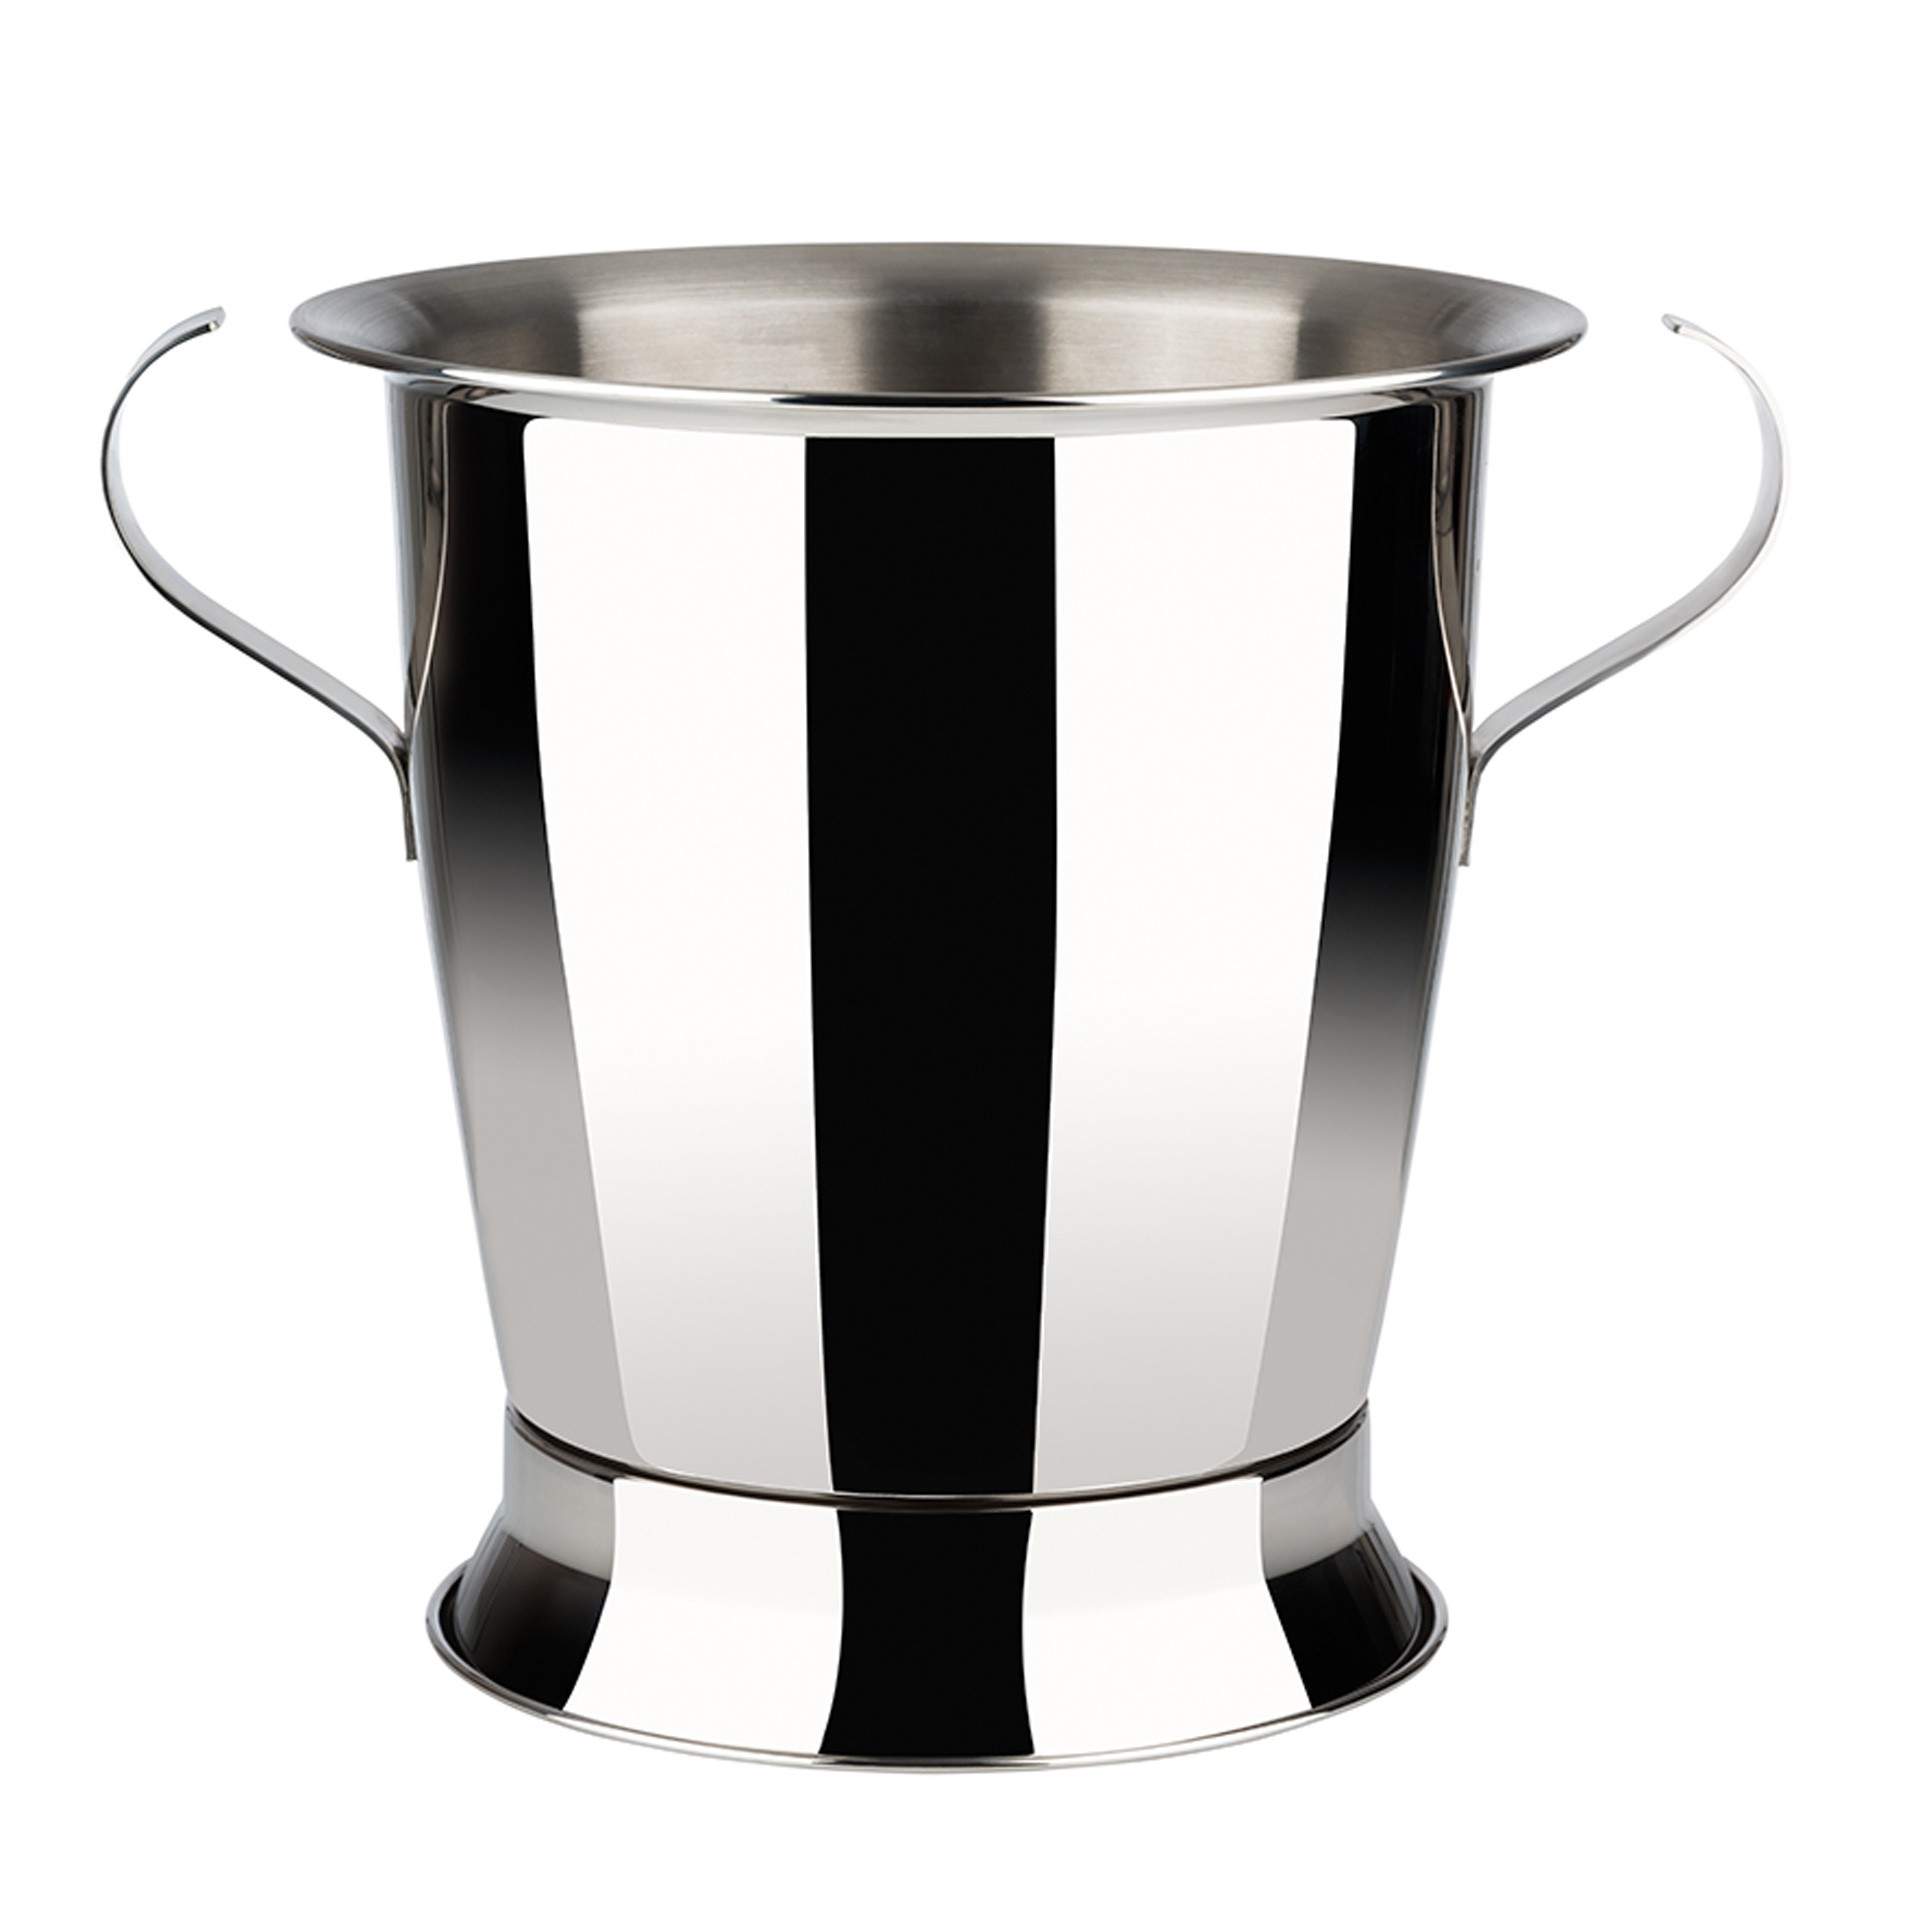 Sektkühler - Serie Trophy - rund - Abm. 24 cm - Ø 23,0 cm - Inhalt 5,0 l - Edelstahl - 36092-B